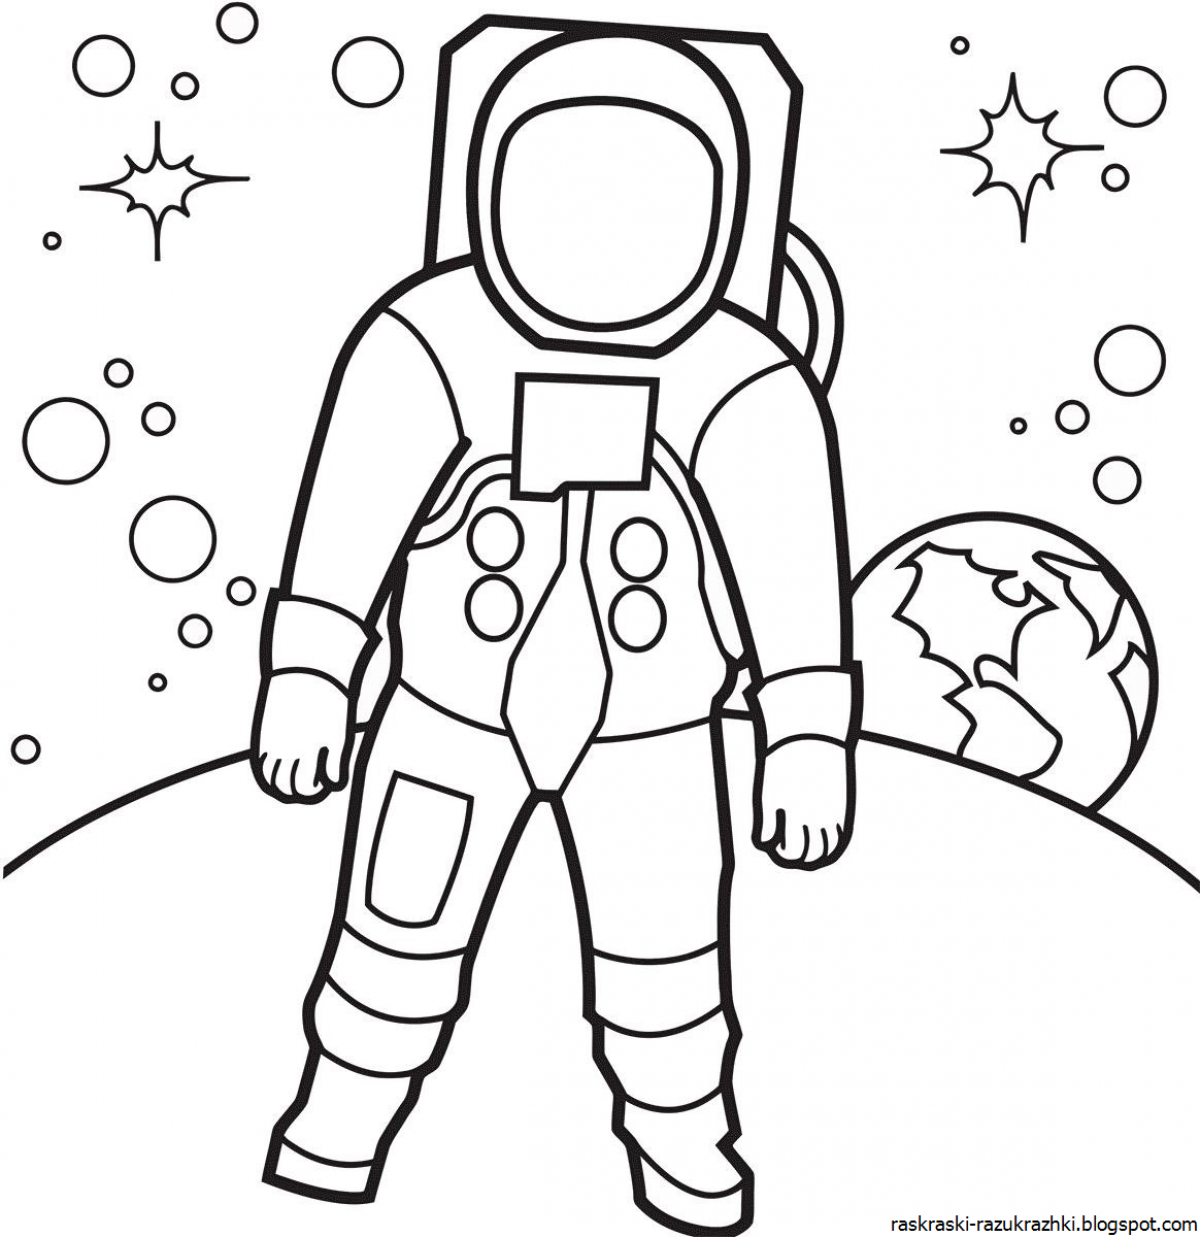 Spectacular astronaut in space suit